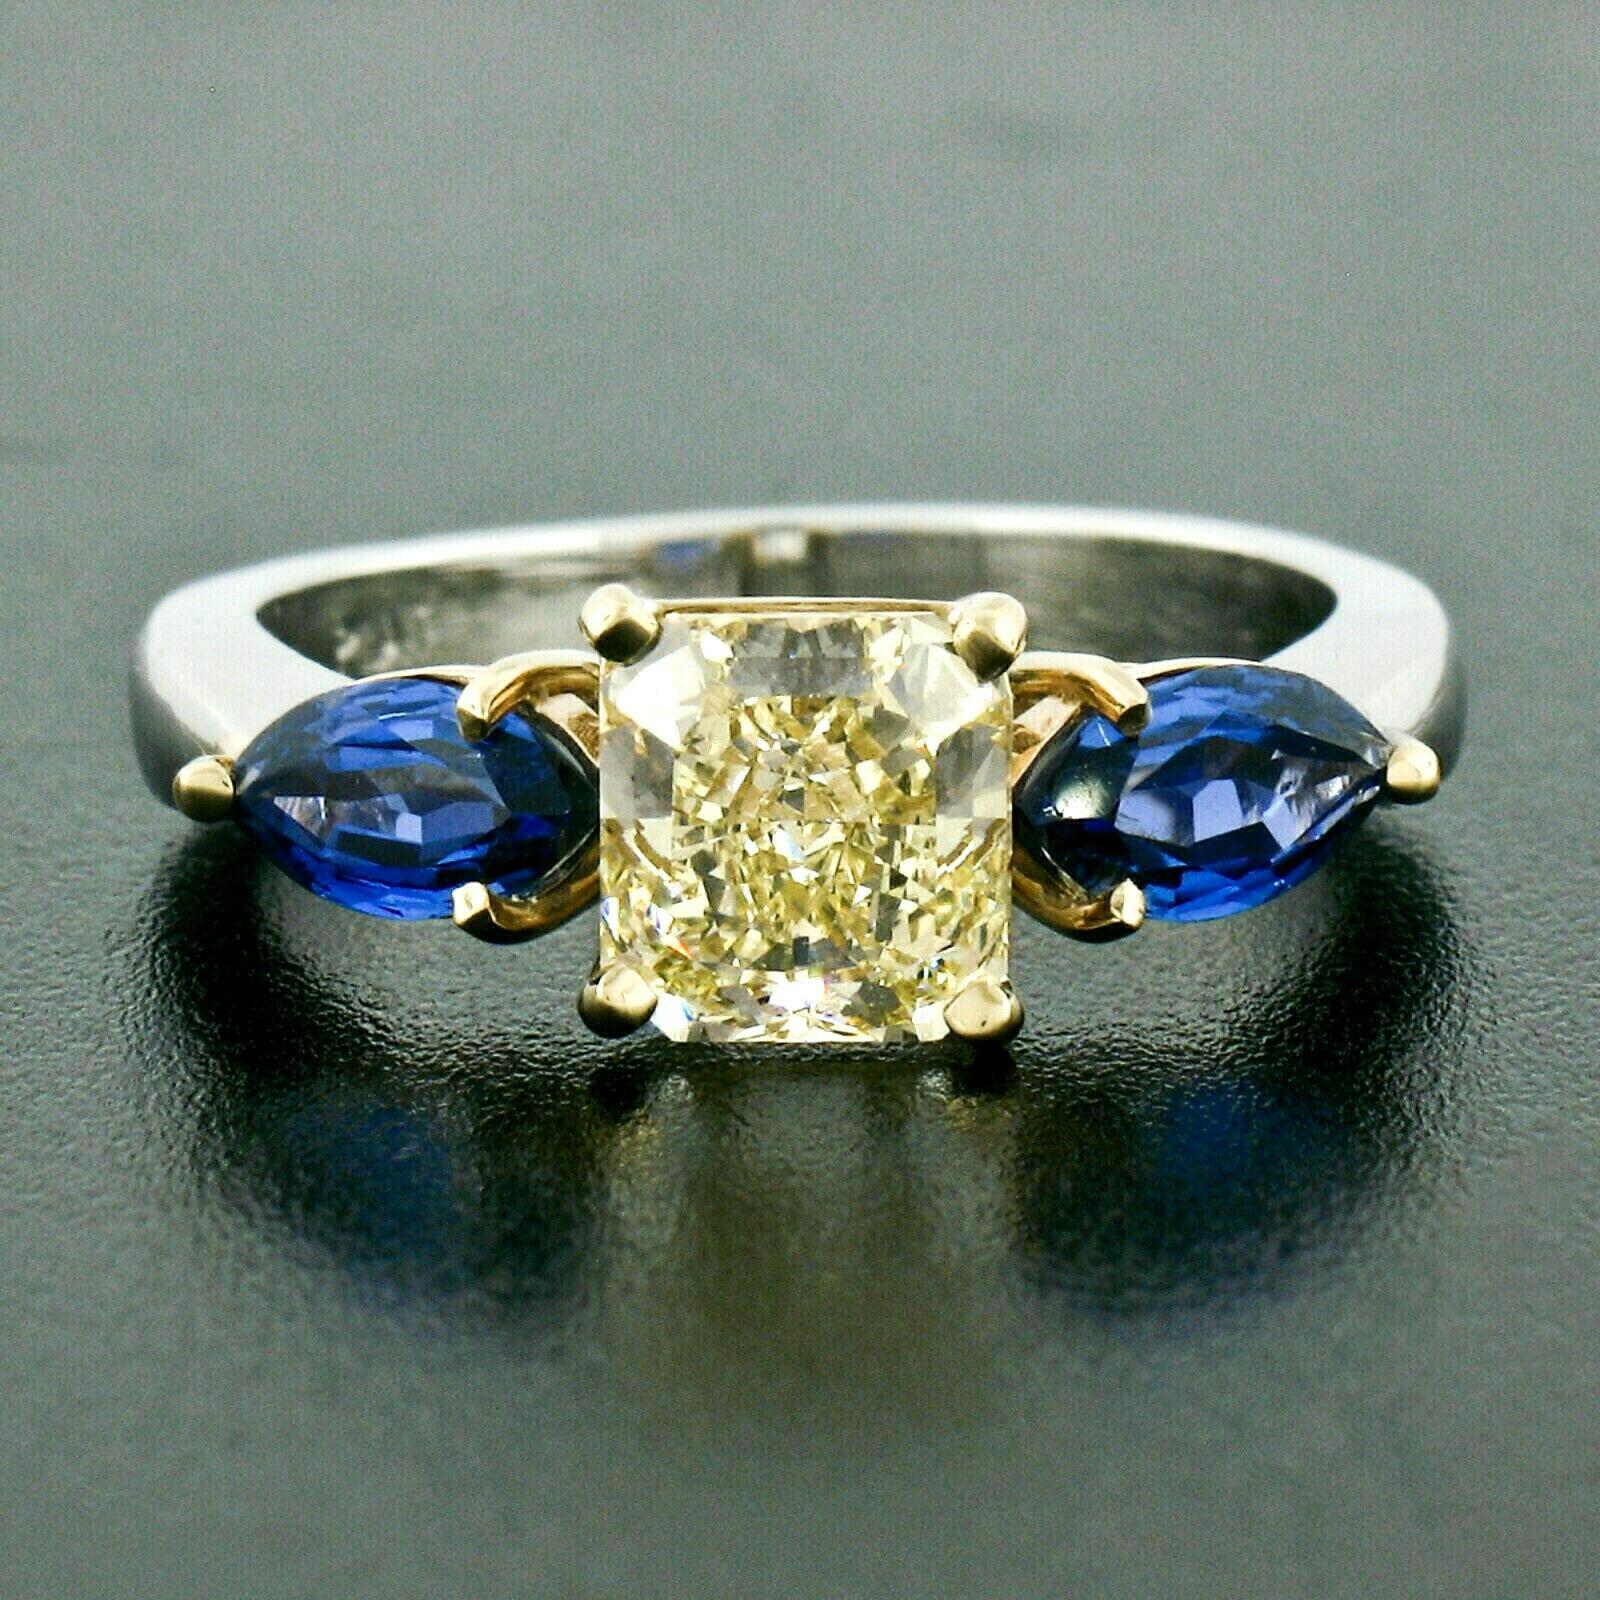 Sie sehen hier einen wirklich atemberaubenden Verlobungsring mit drei Diamanten und Saphiren, handgefertigt aus massivem Platin und 18 Karat Gelbgold. Der Ring verfügt über eine wirklich atemberaubende GIA-zertifiziert, strahlenden Schliff, fancy